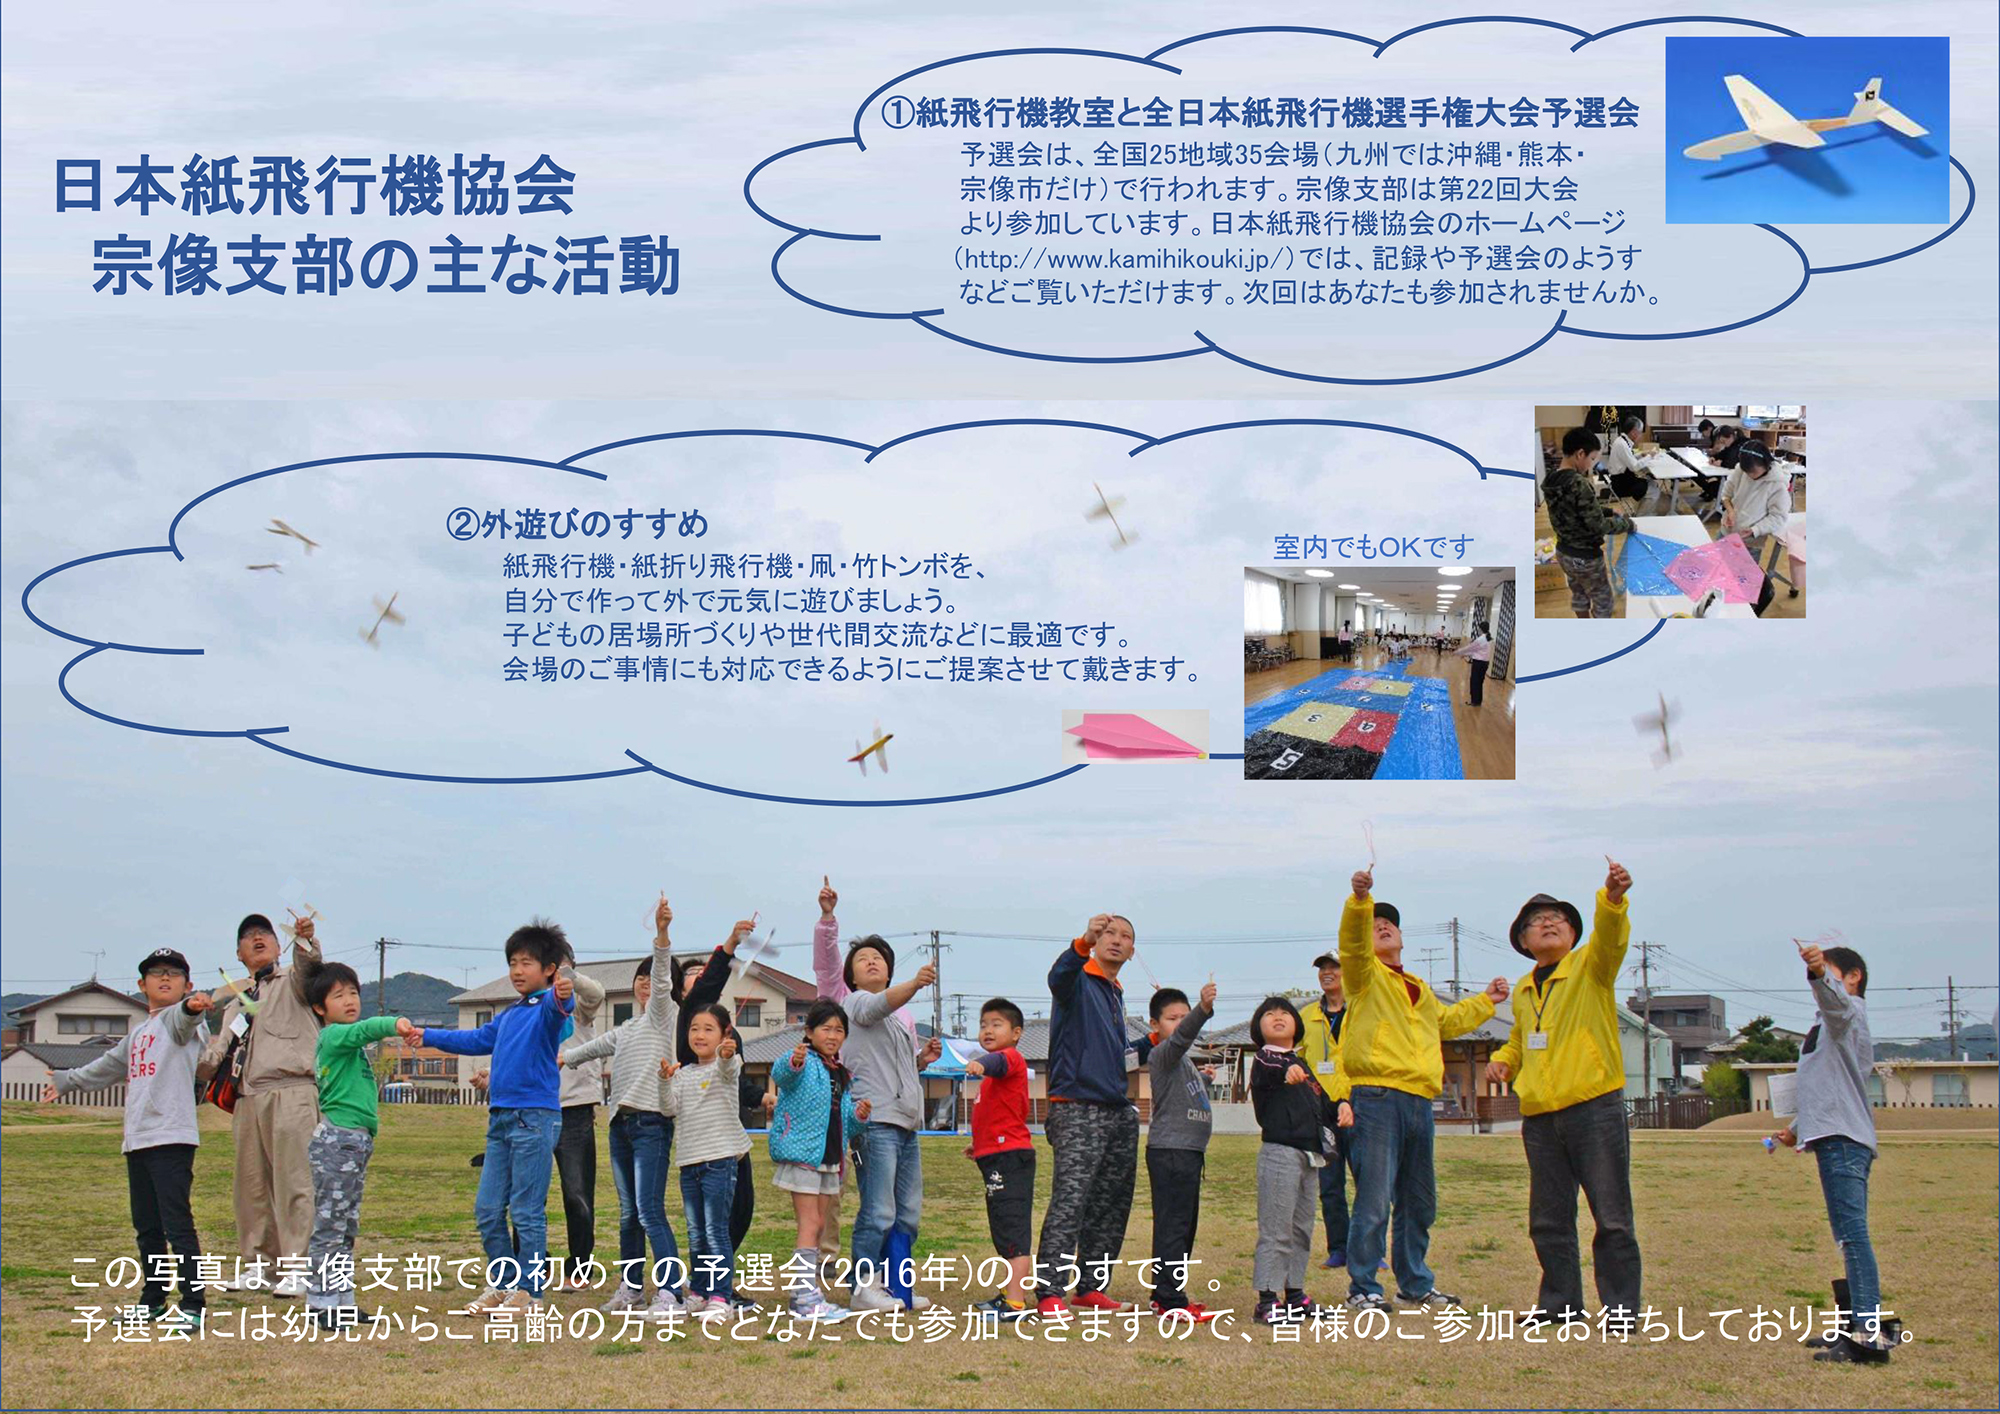 日本紙飛行機協会のパンフレット